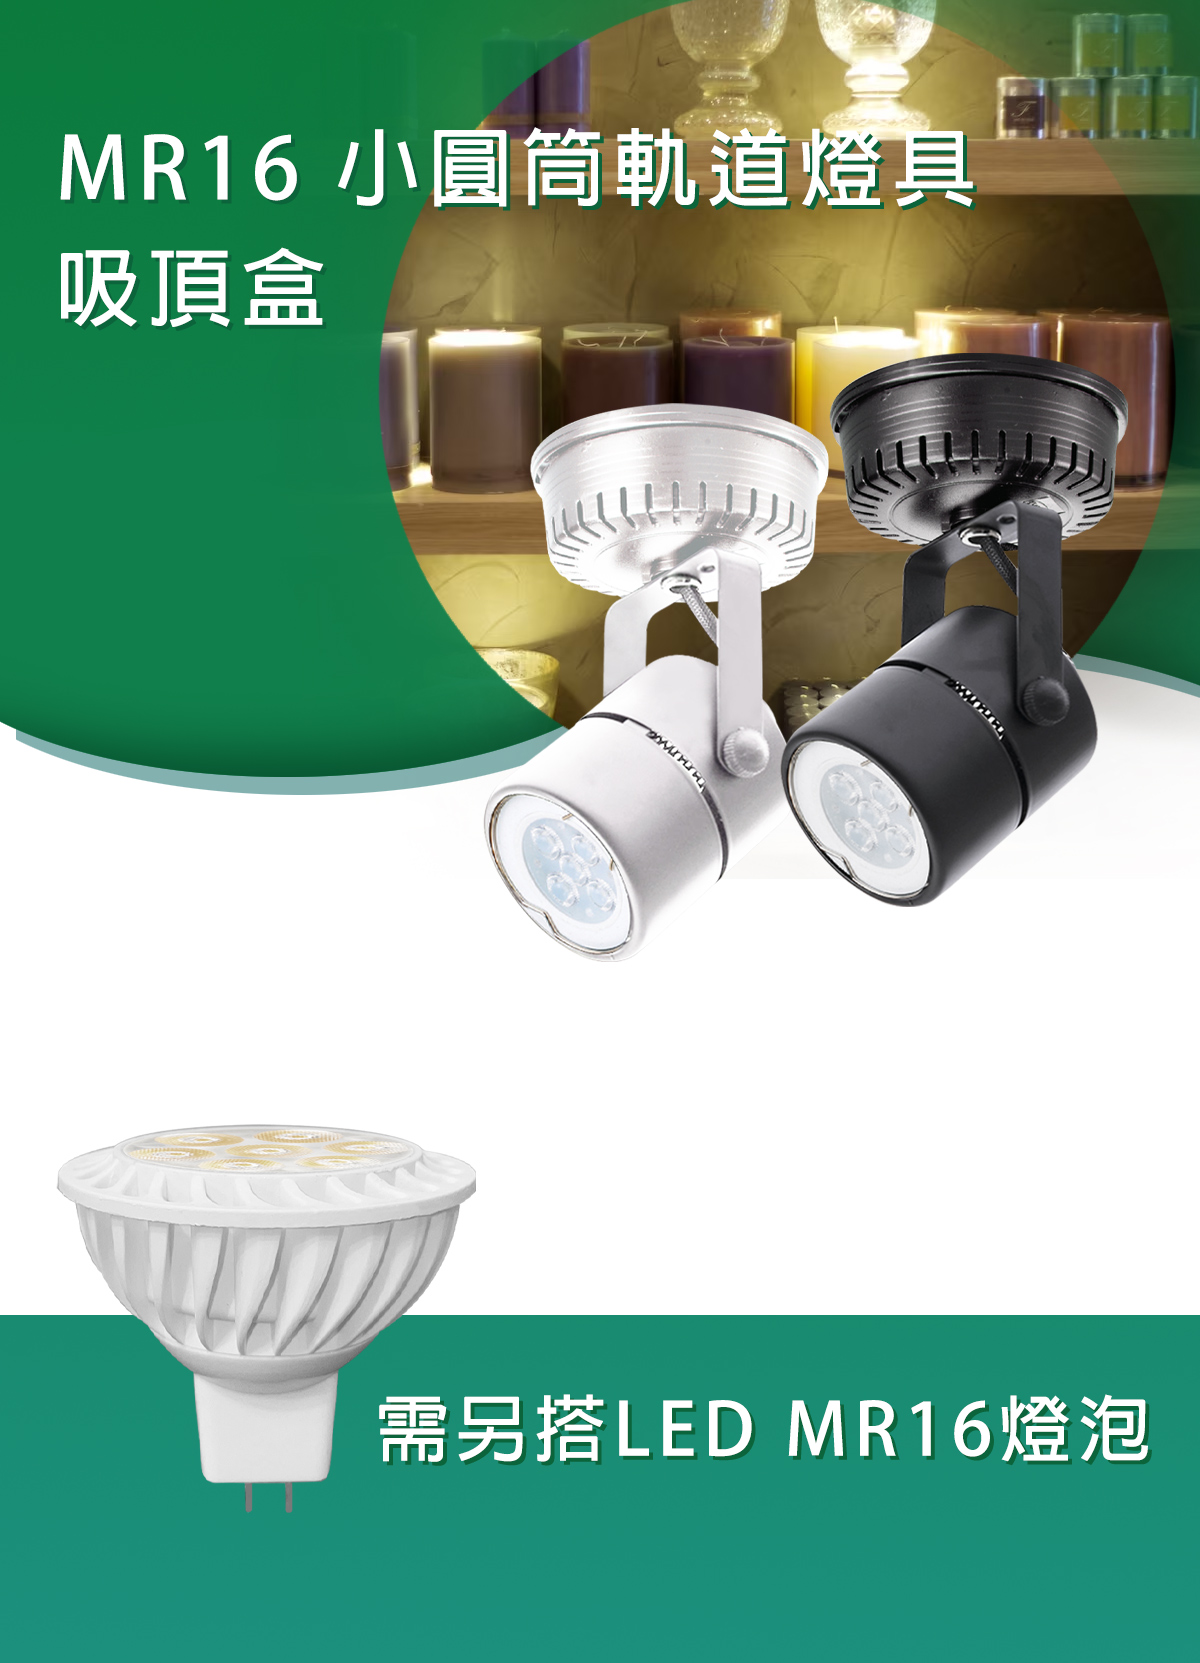 【KAO'S】吸頂式投射燈 黑殼/白殼 需搭配MR16杯燈 可替換燈泡